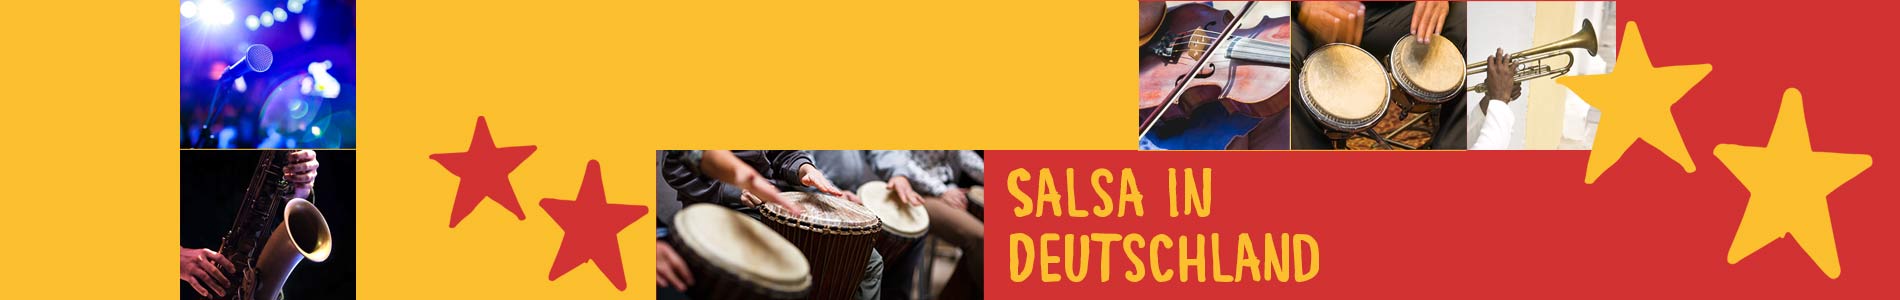 Salsa in Deuben – Salsa lernen und tanzen, Tanzkurse, Partys, Veranstaltungen